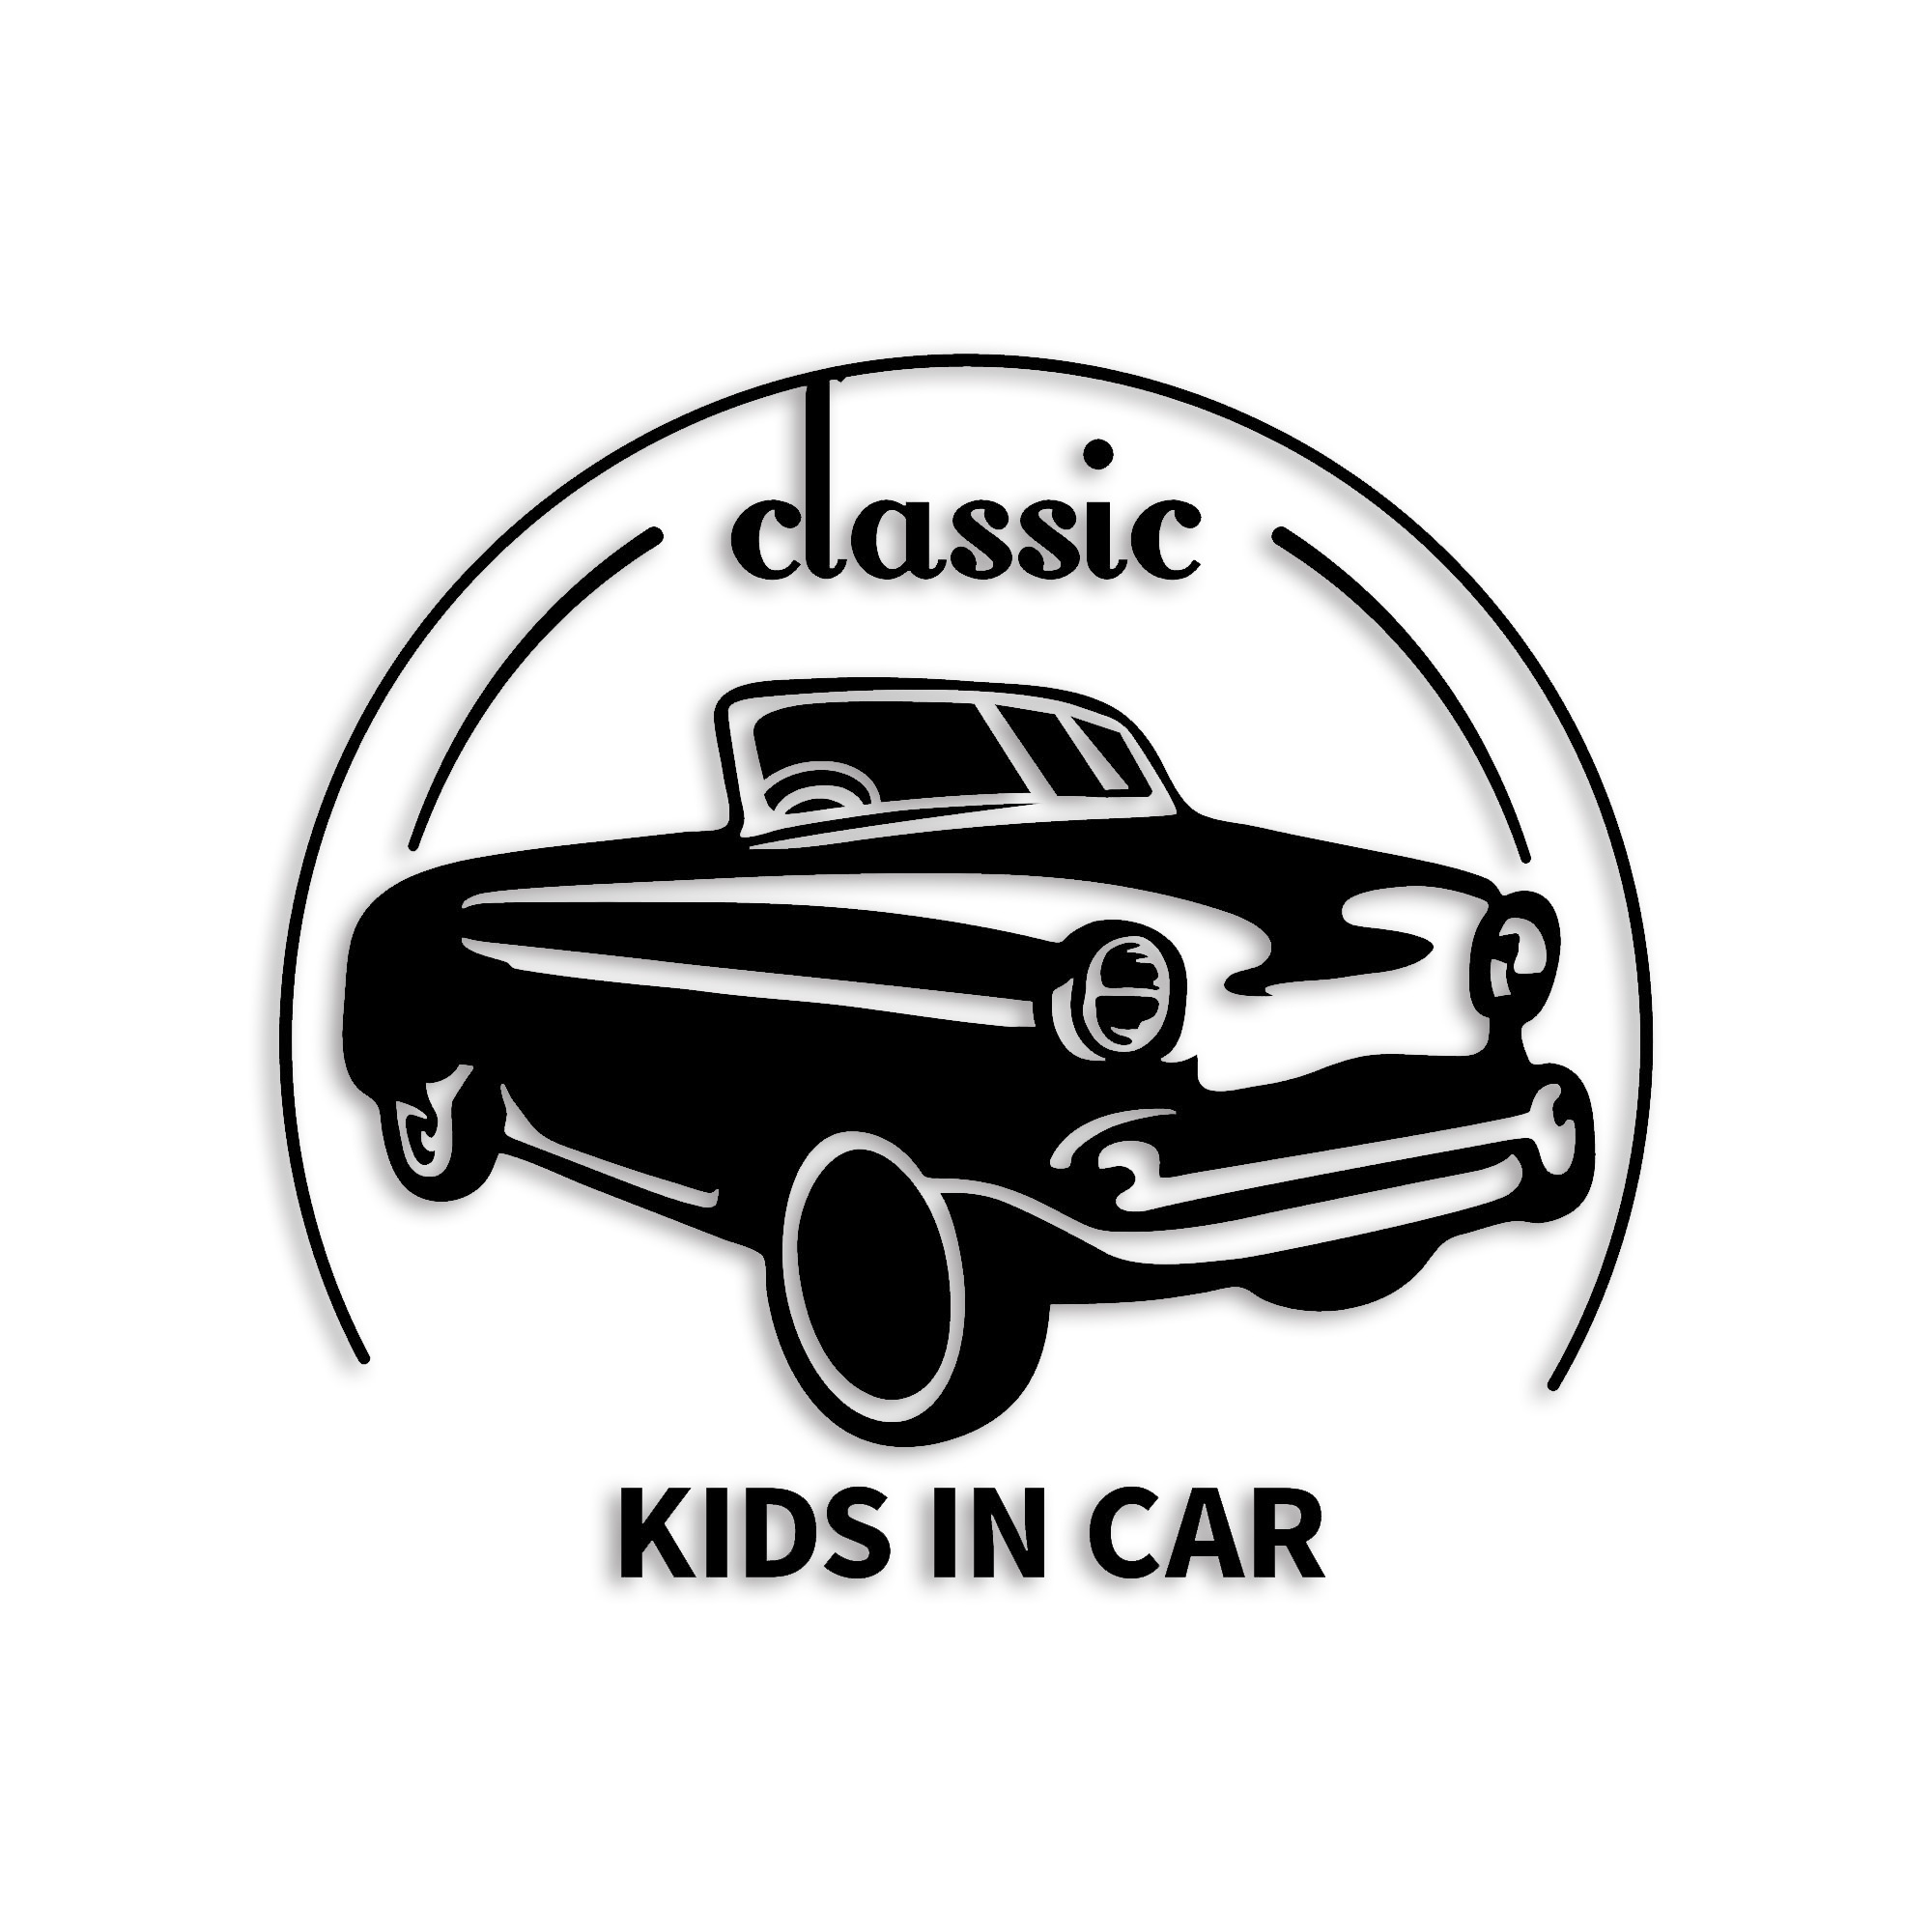 キッズインカ― カッティング ステッカー シール kidsincar classic ロゴ 防水 車 デカール